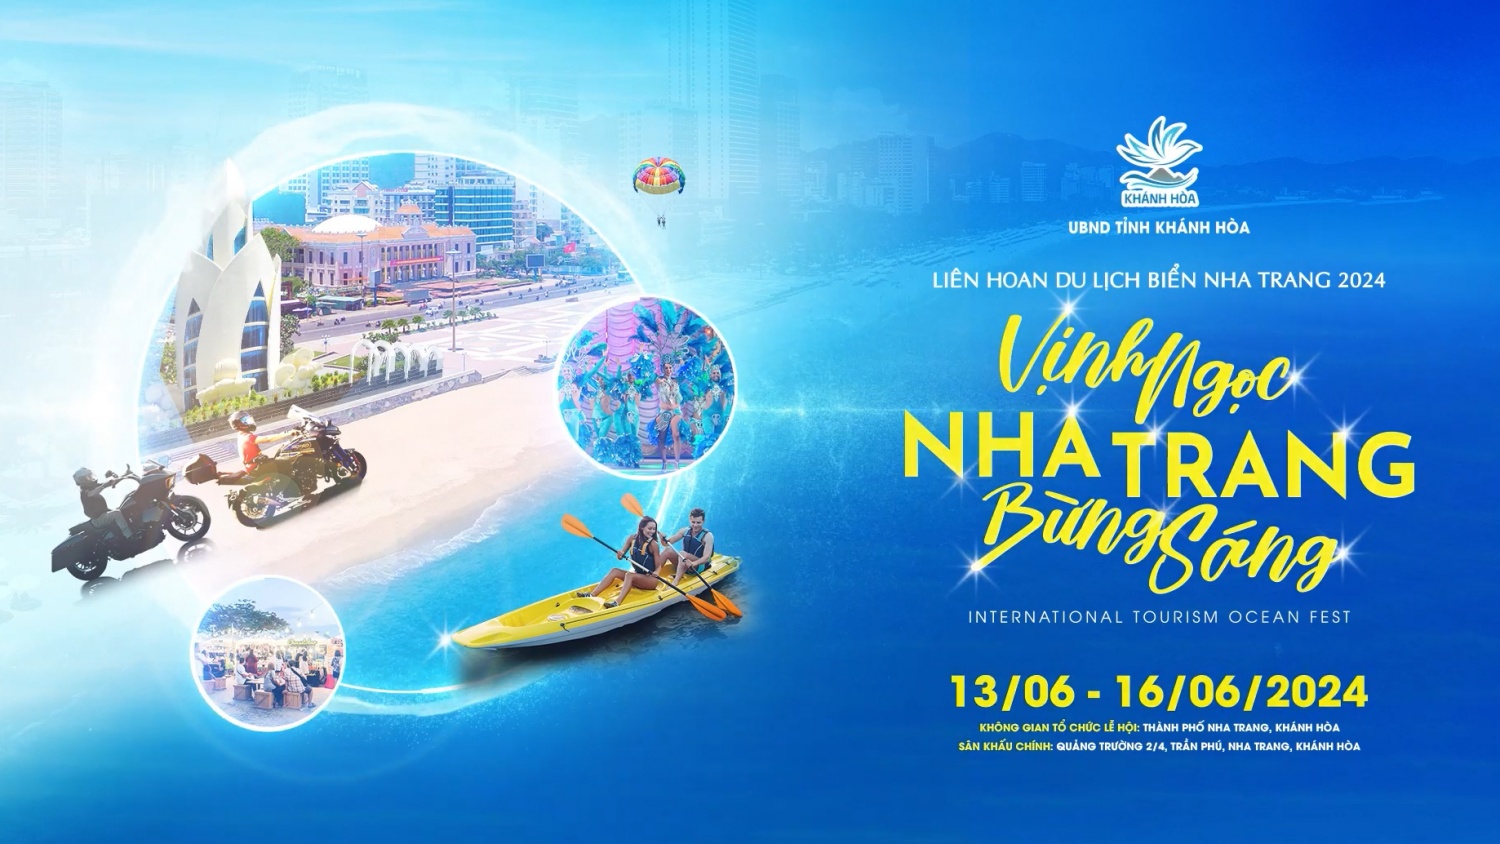 Liên hoan Du lịch biển Nha Trang năm 2024 sẽ diễn ra từ ngày 13-16/6. (Ảnh: Internet)